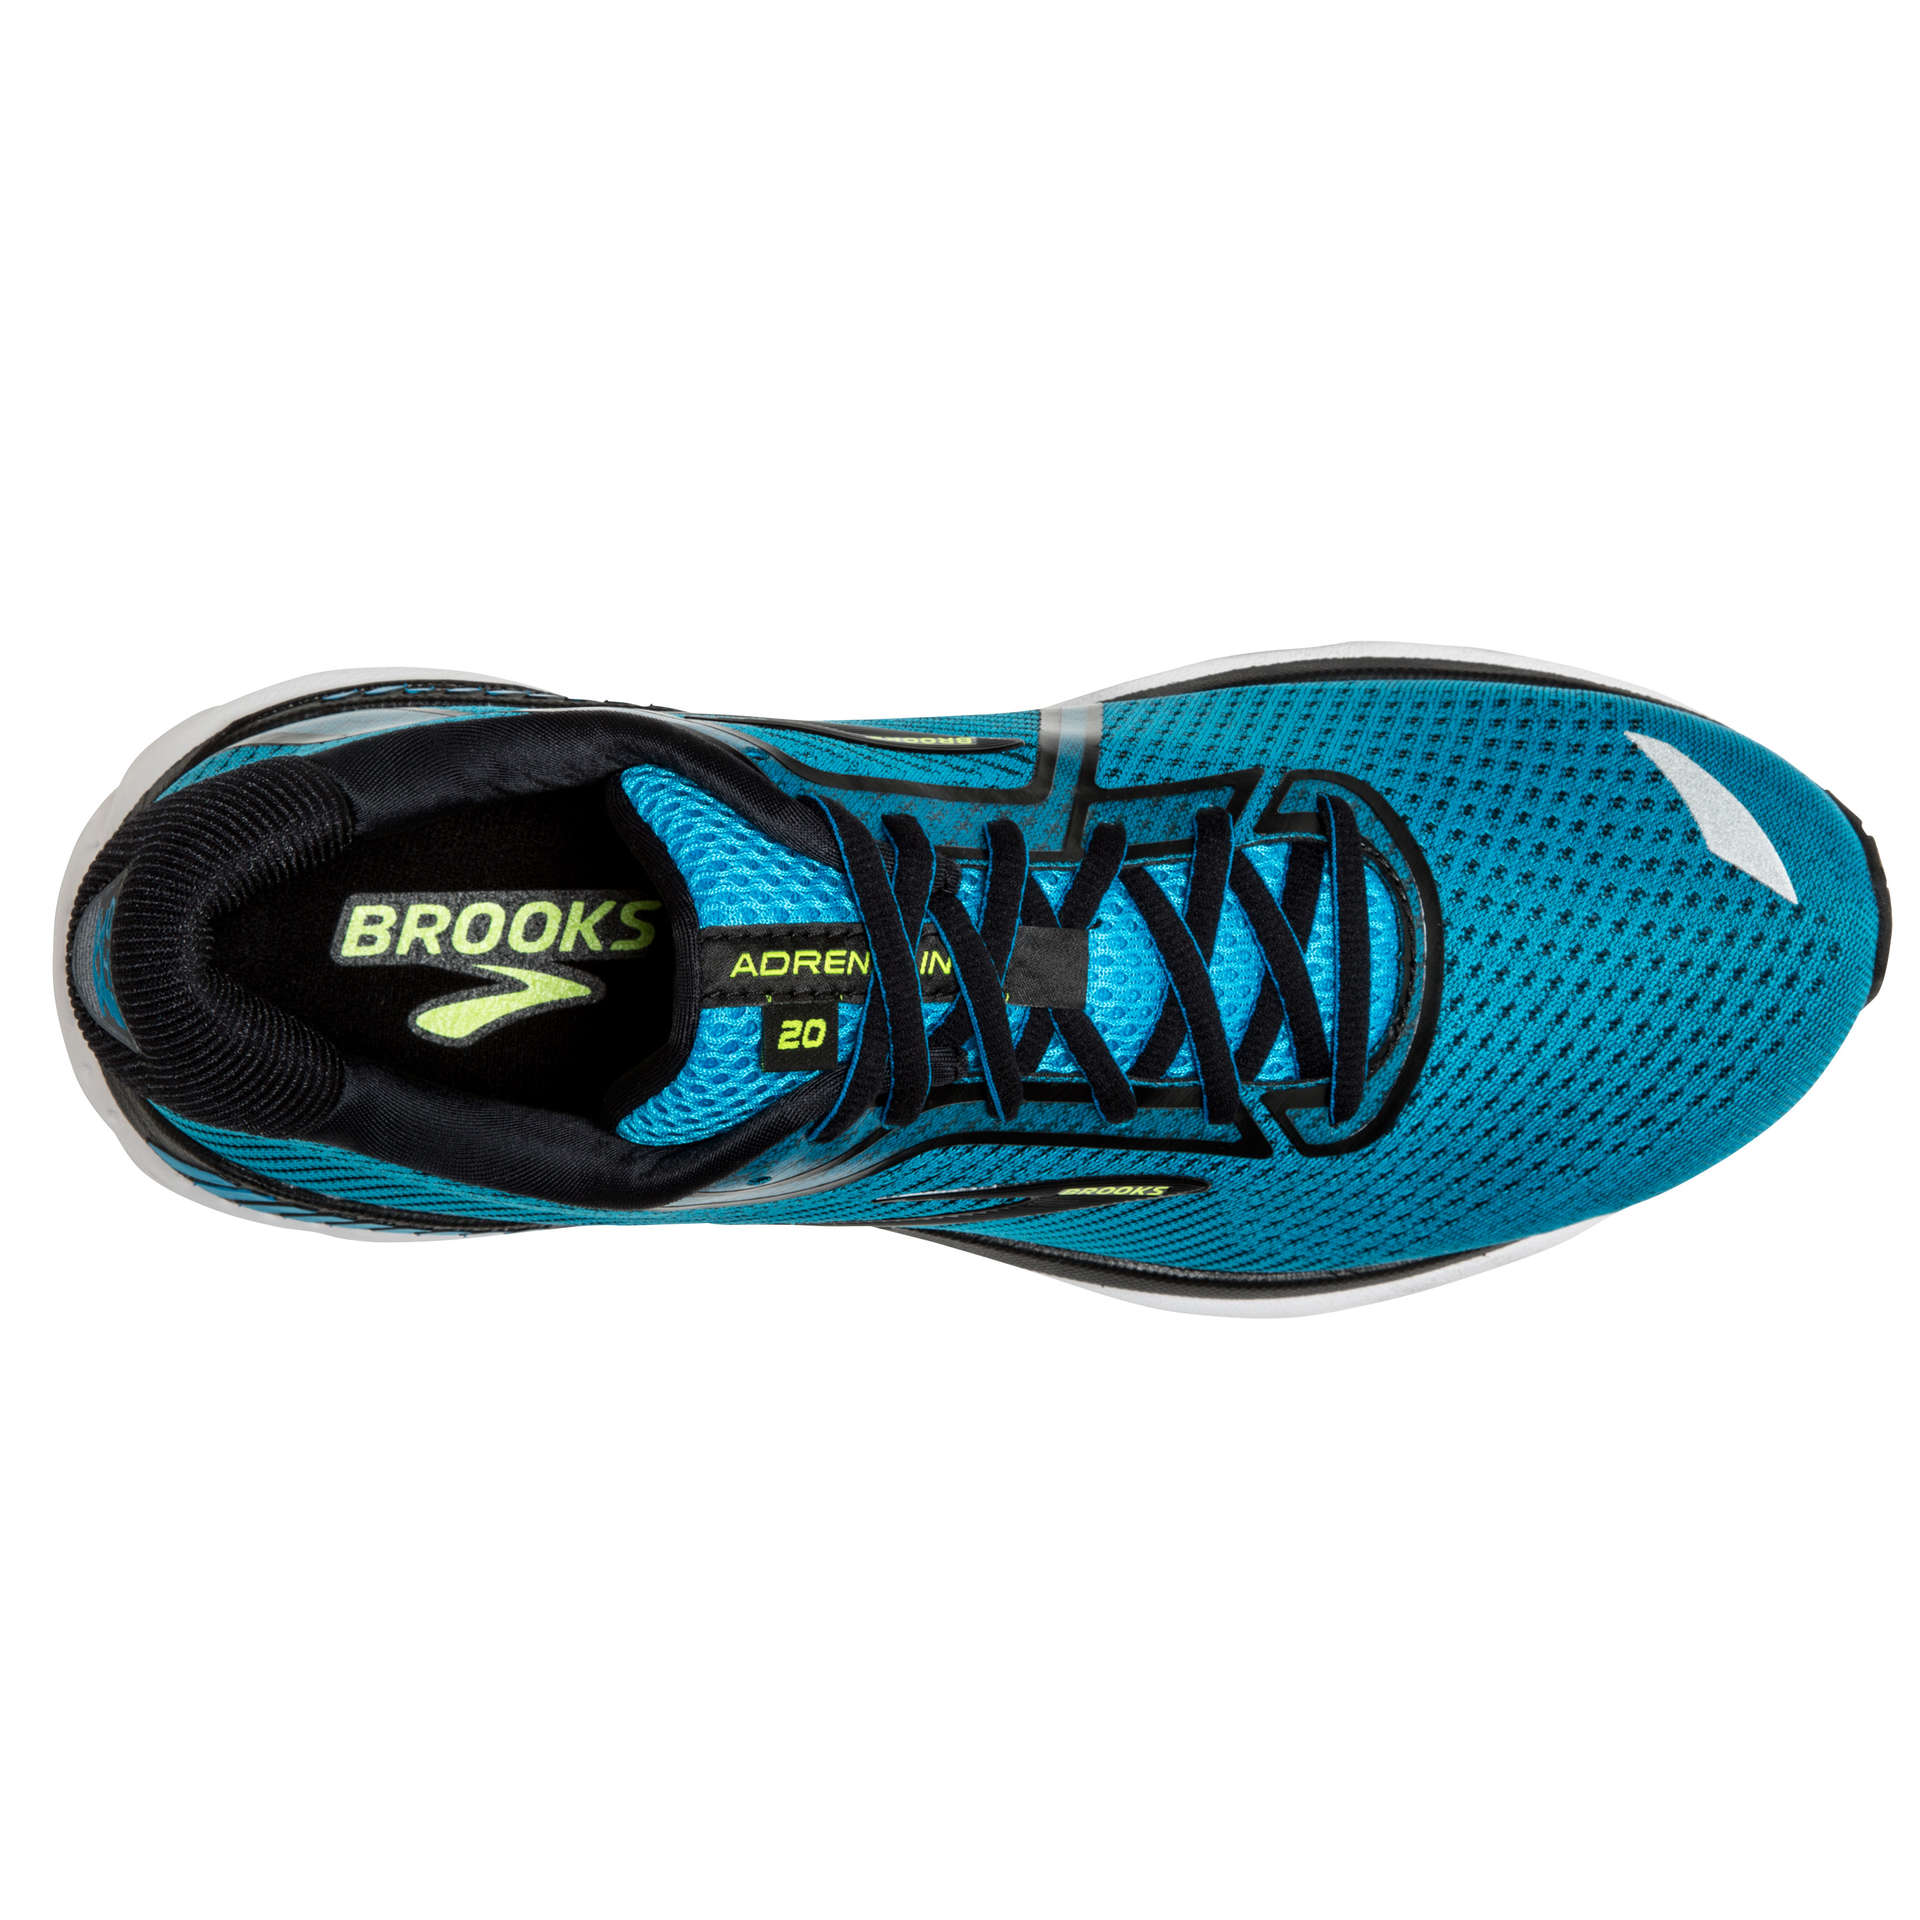 Brooks Adrenaline GTS 20 Hardloopschoenen Blauw/Zwart Heren